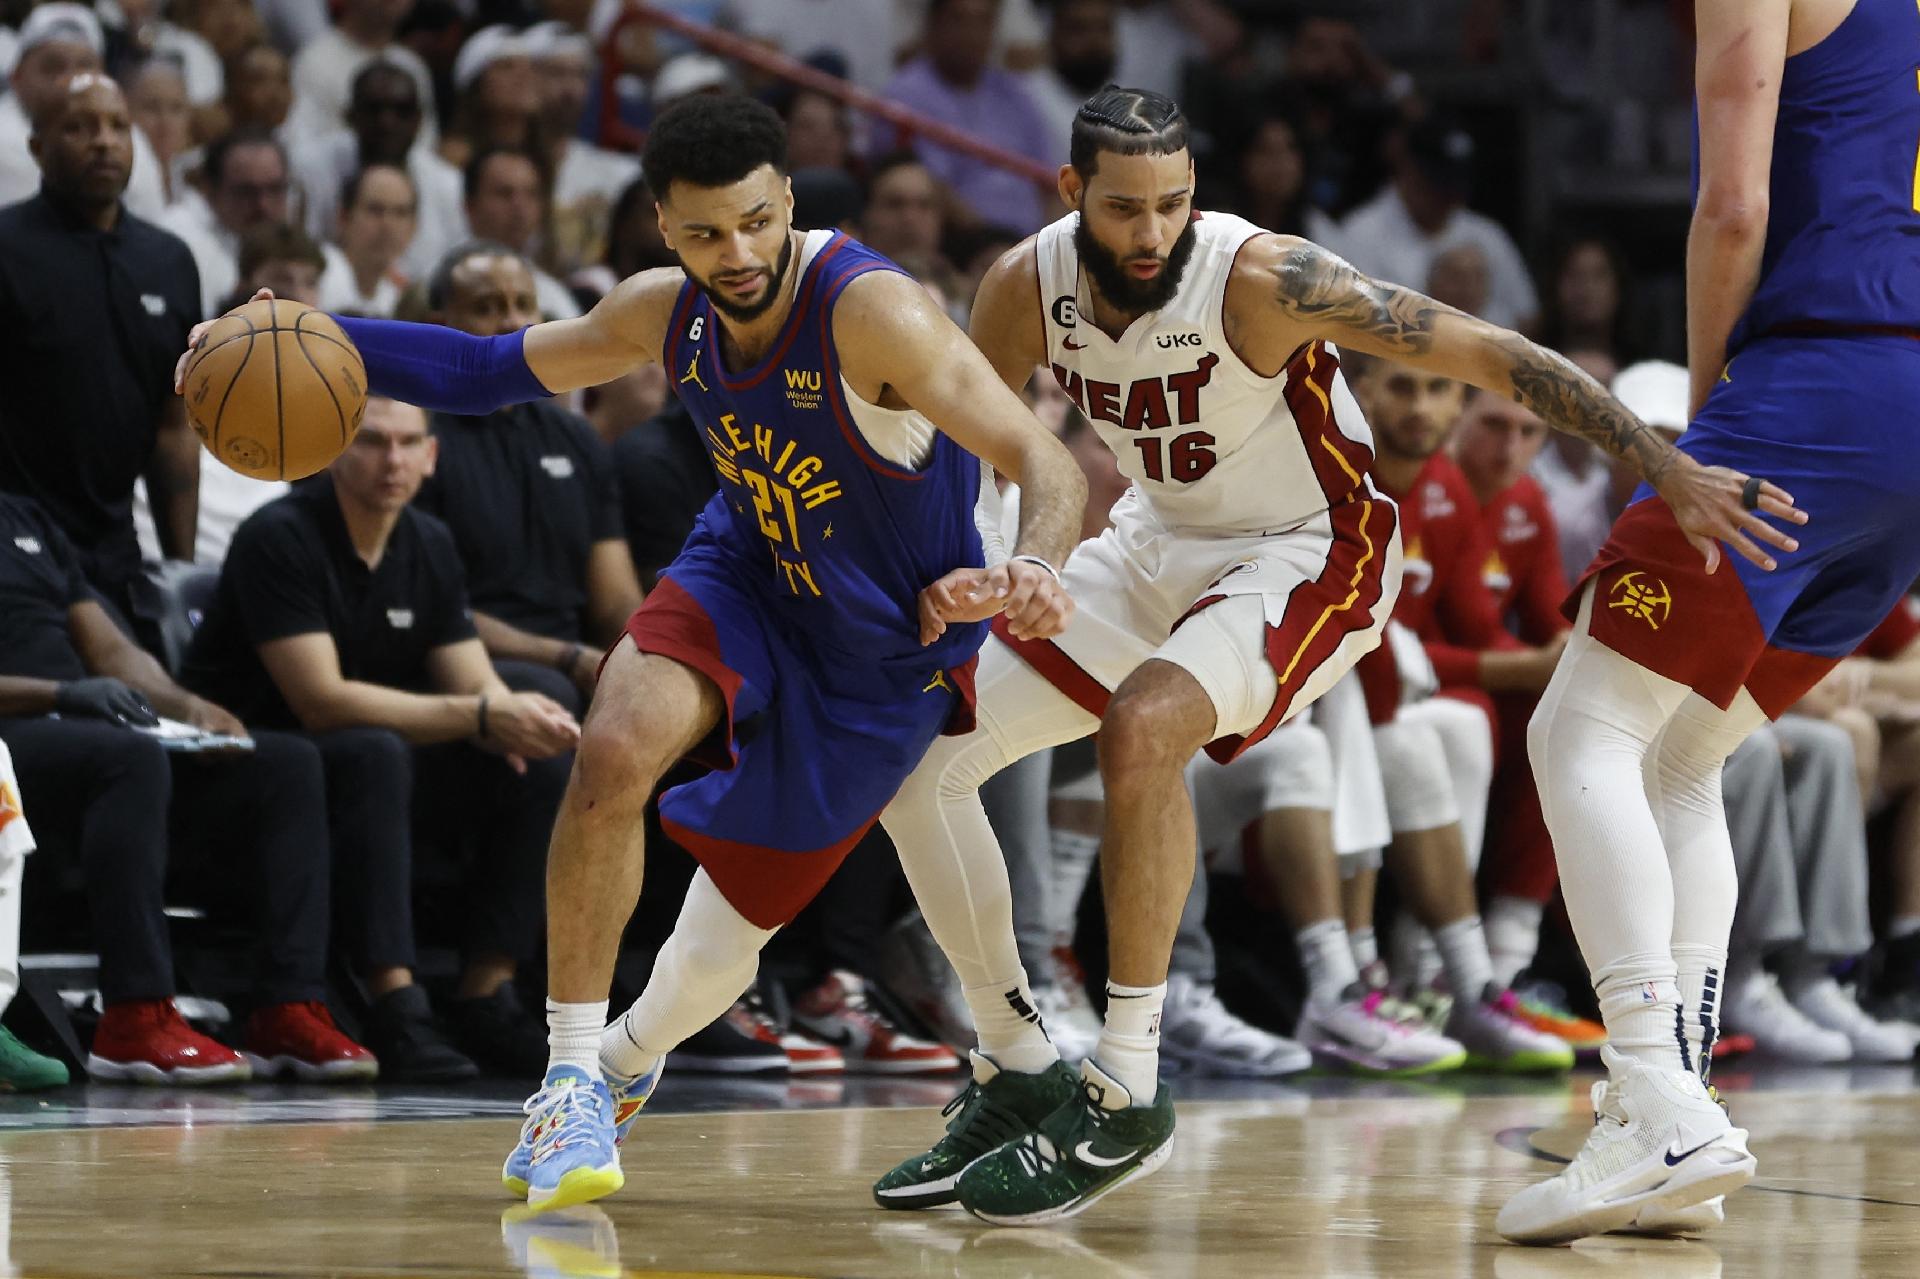 Finais NBA: Miami Heat reage no último quatro e empata série com Nuggets